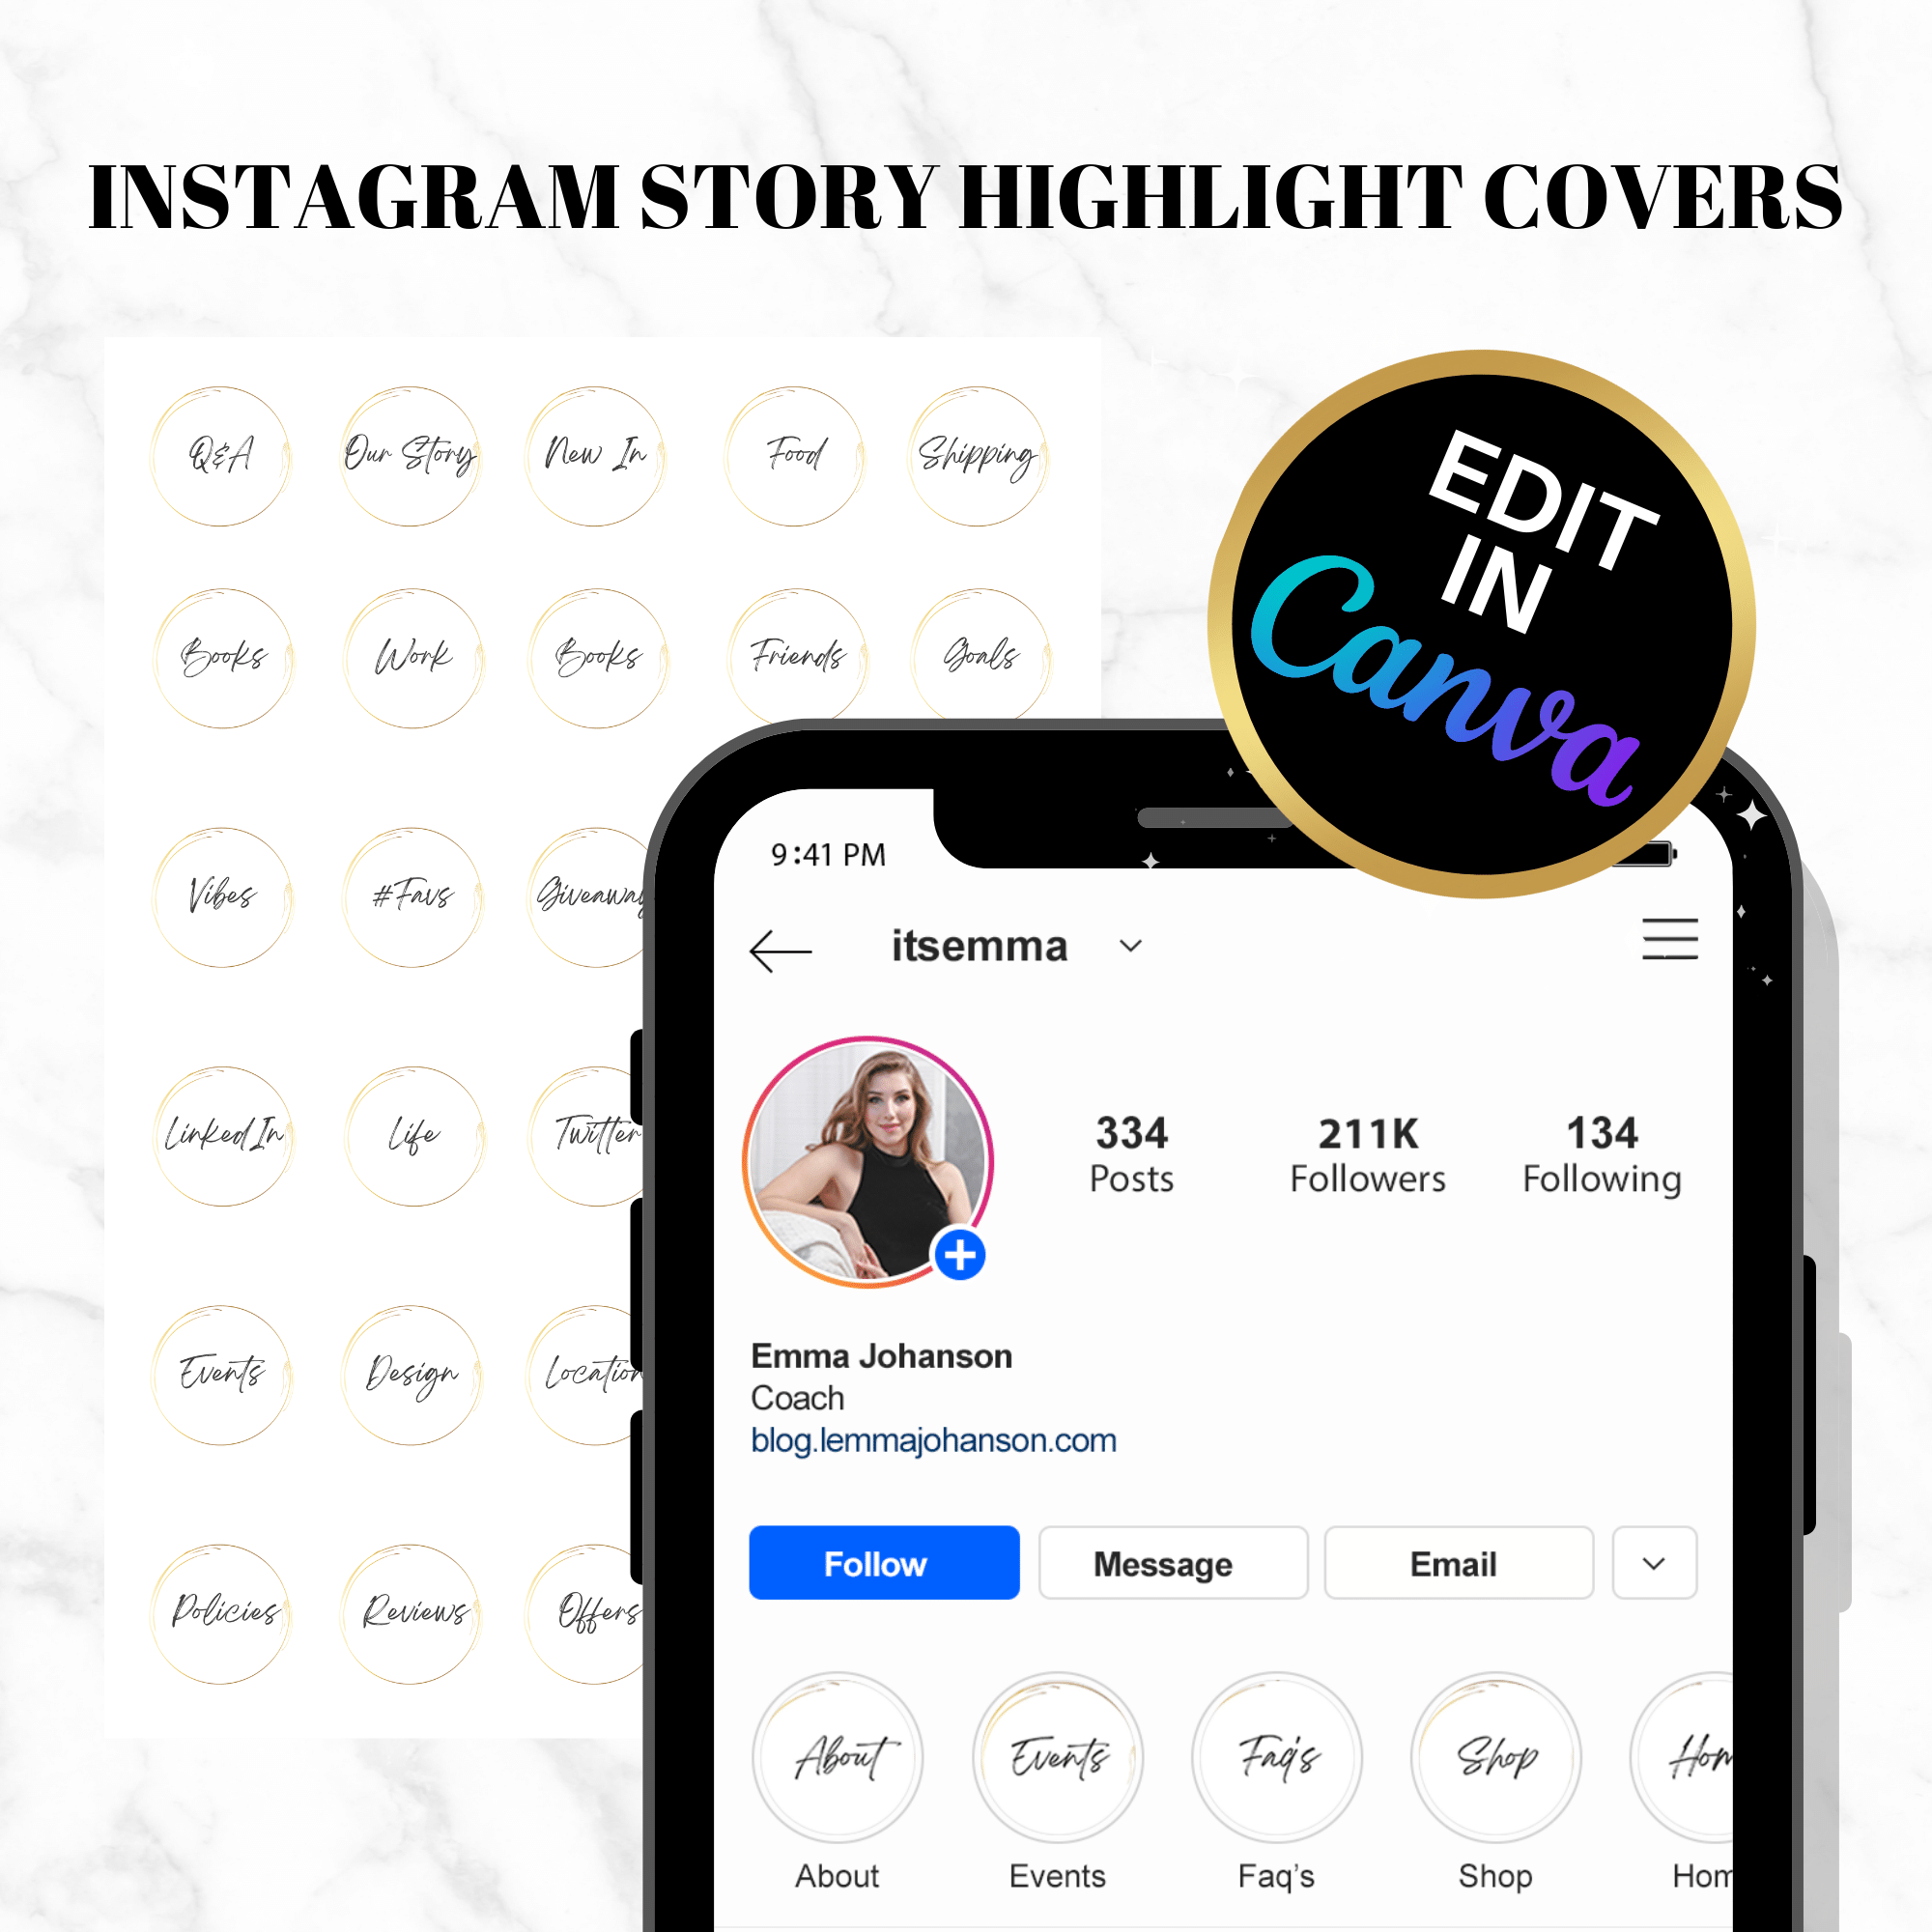 Instagram Highlight covers - White